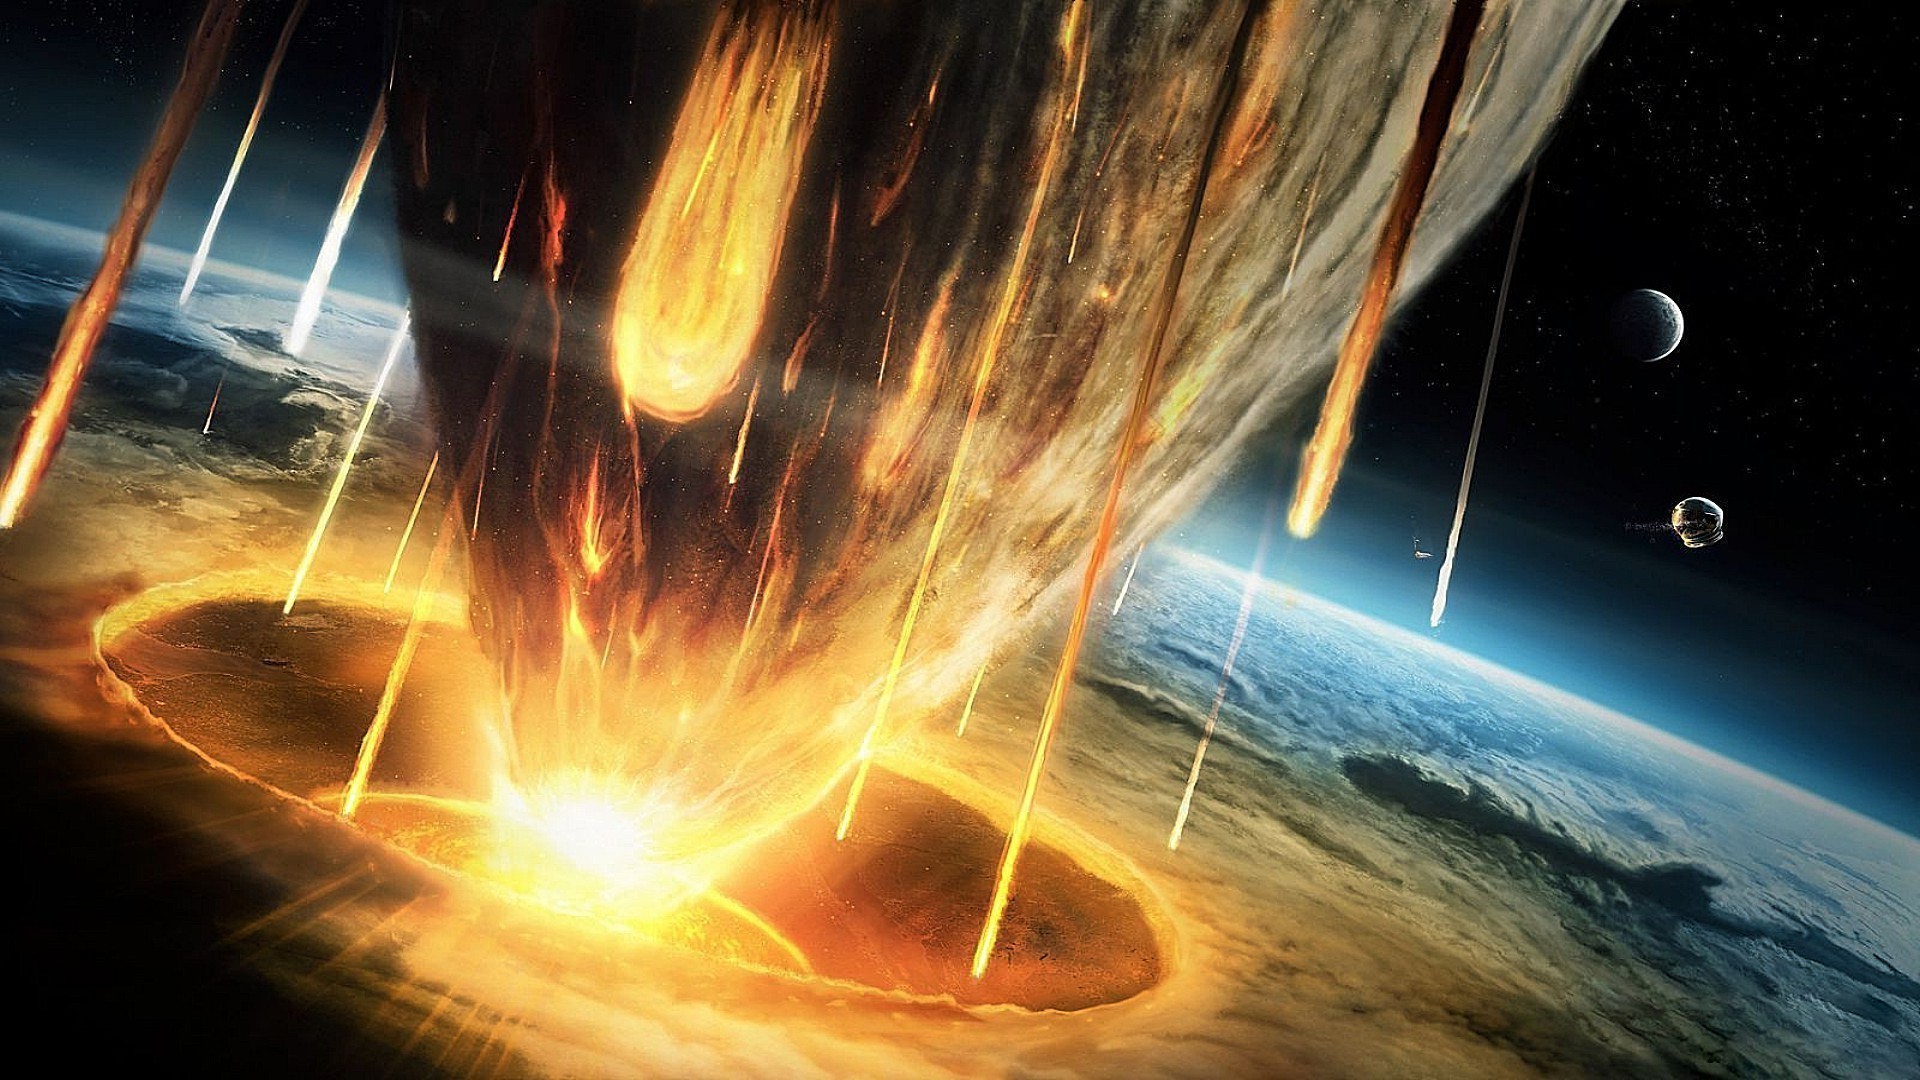 астероиды пламя горячая энергии дым наука свет тепло движения аннотация астрономия опасность пространство люминесценция взрыв сожгли вспышки темный фестиваль